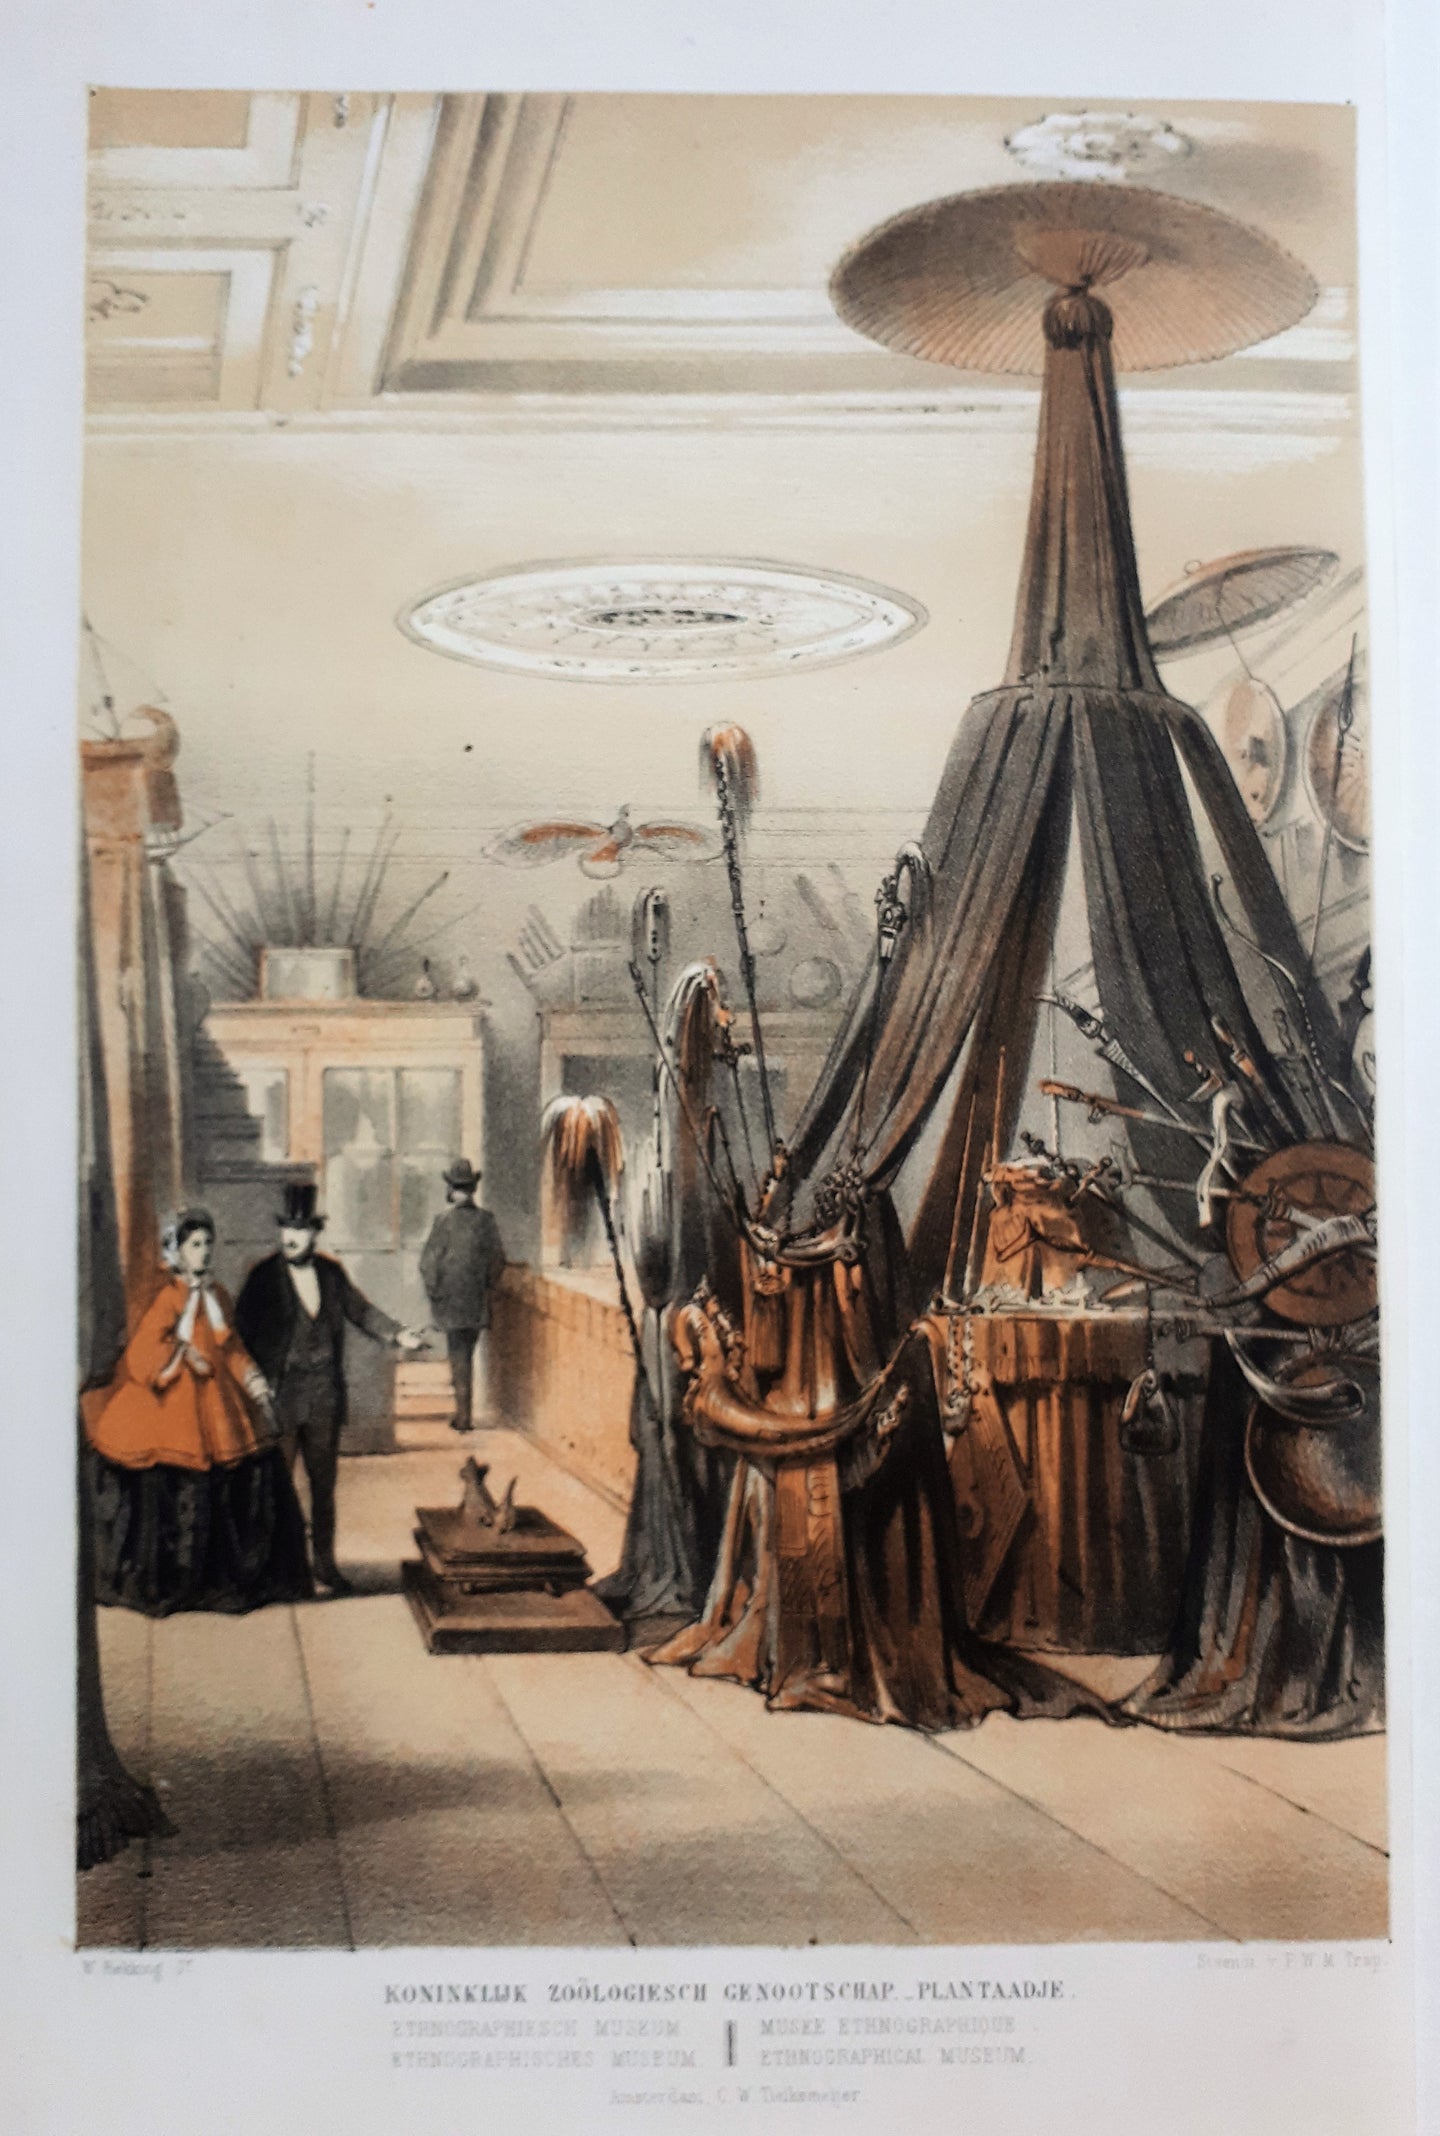 Amsterdam Koninklijk zoölogisch genootschap Ethnographiesch museum - W Hekking jr/ GW Tielkemeijer - 1869